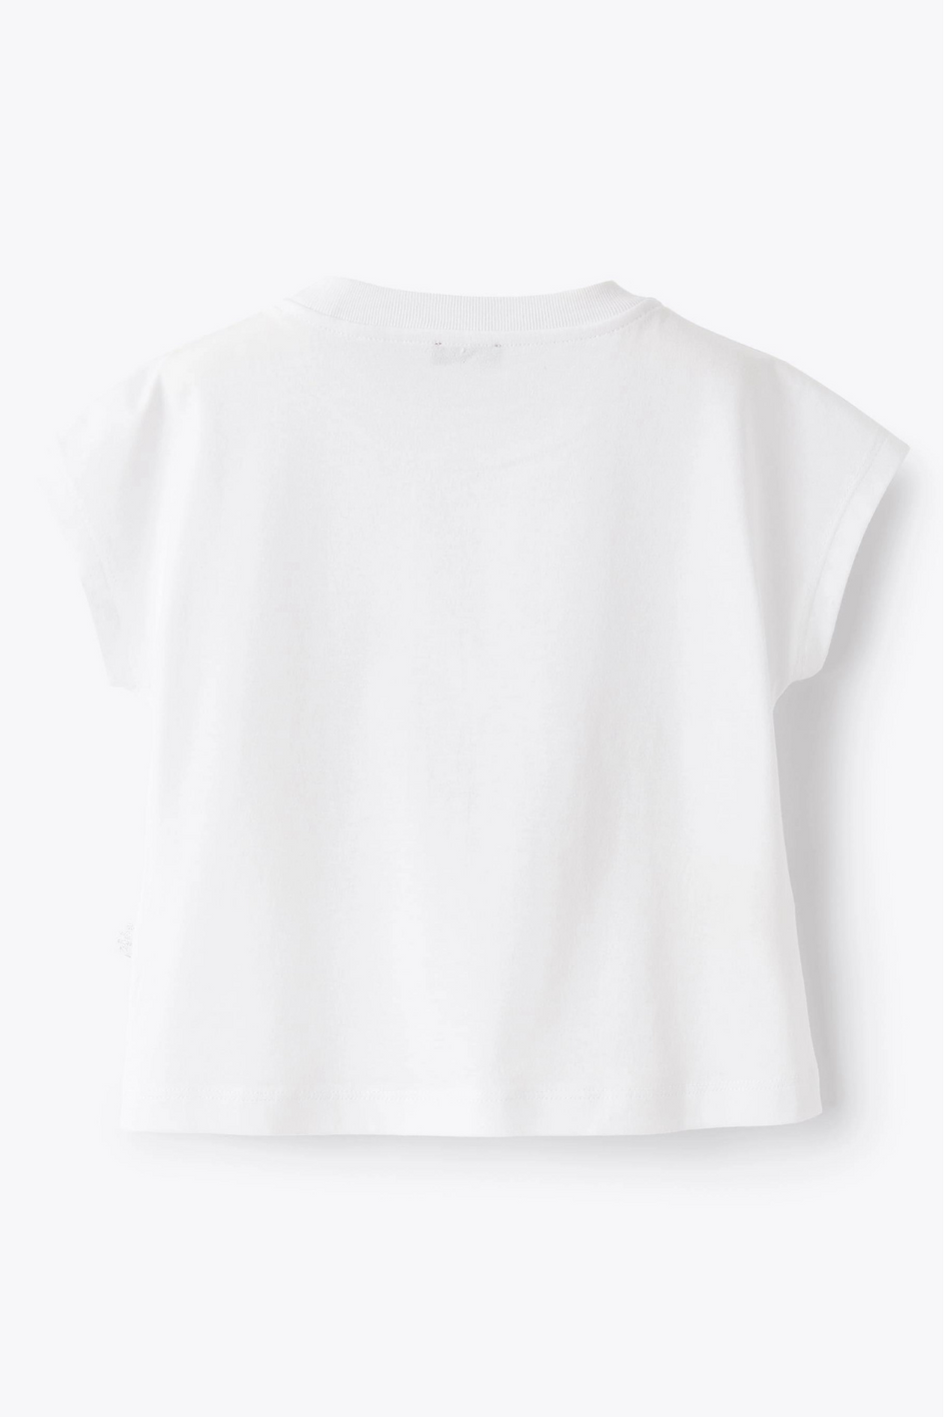 Weißes T-Shirt mit aufgedruckter Landschaft